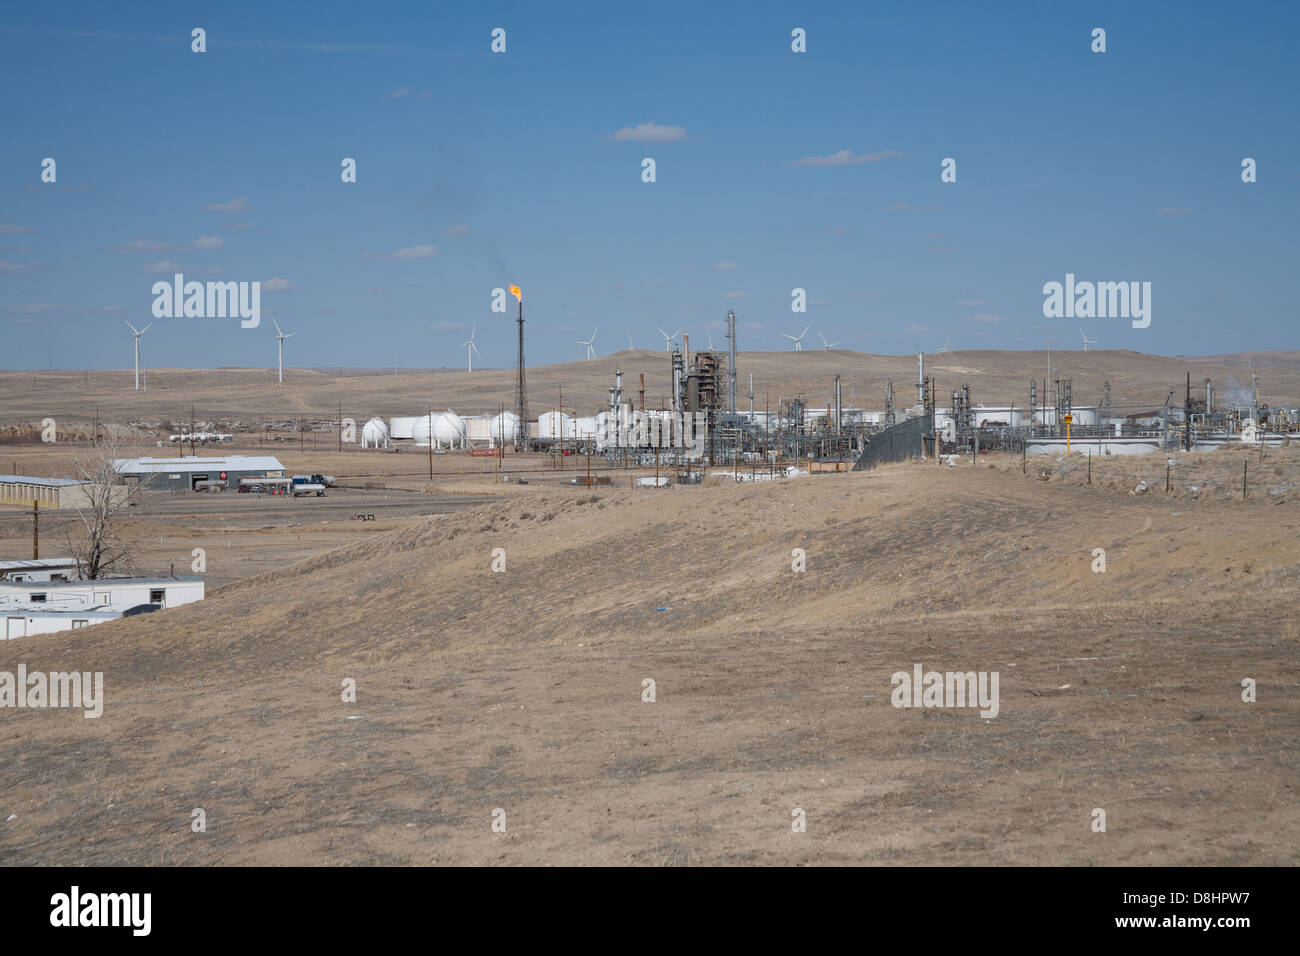 Ironisch Energie Foto mit Windmühlen im Hintergrund und ein Öl / Gas Raffinerie- und Gastechnik flare im Vordergrund. Stockfoto